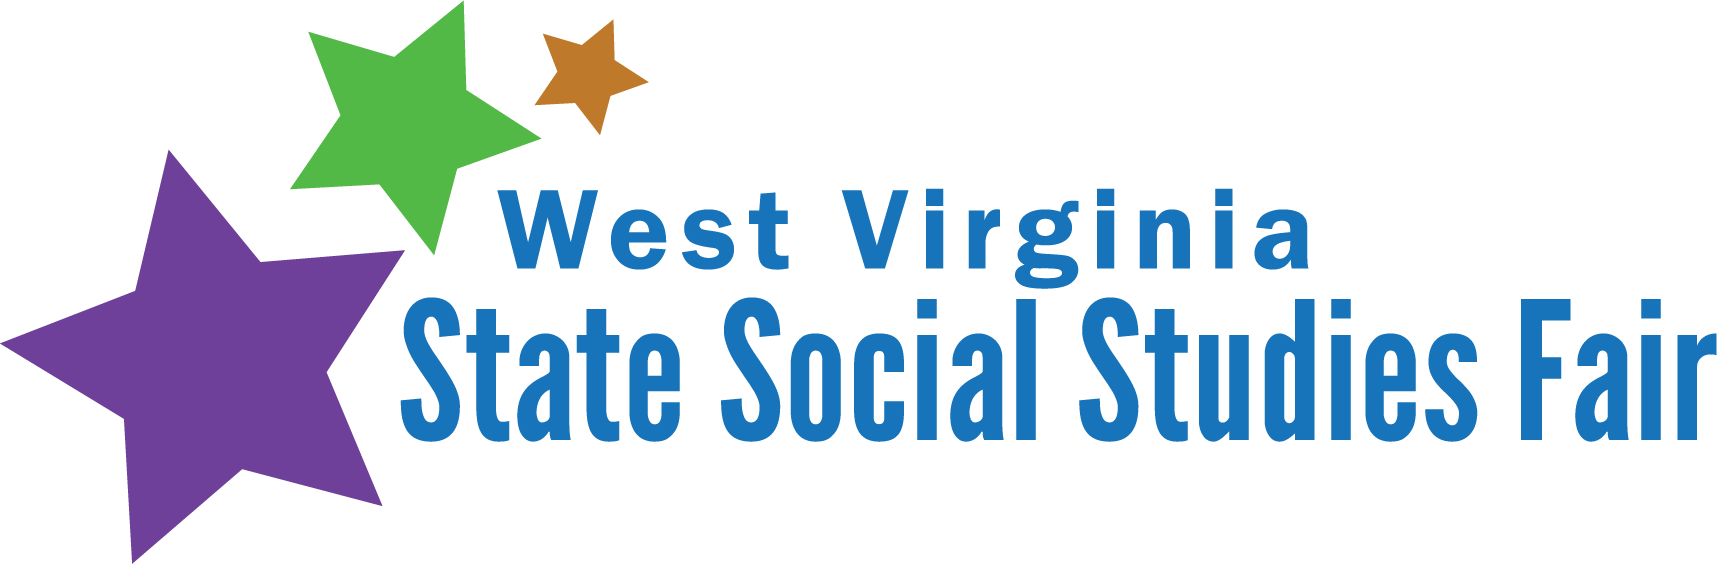 West Virginia State Social Studies Fair